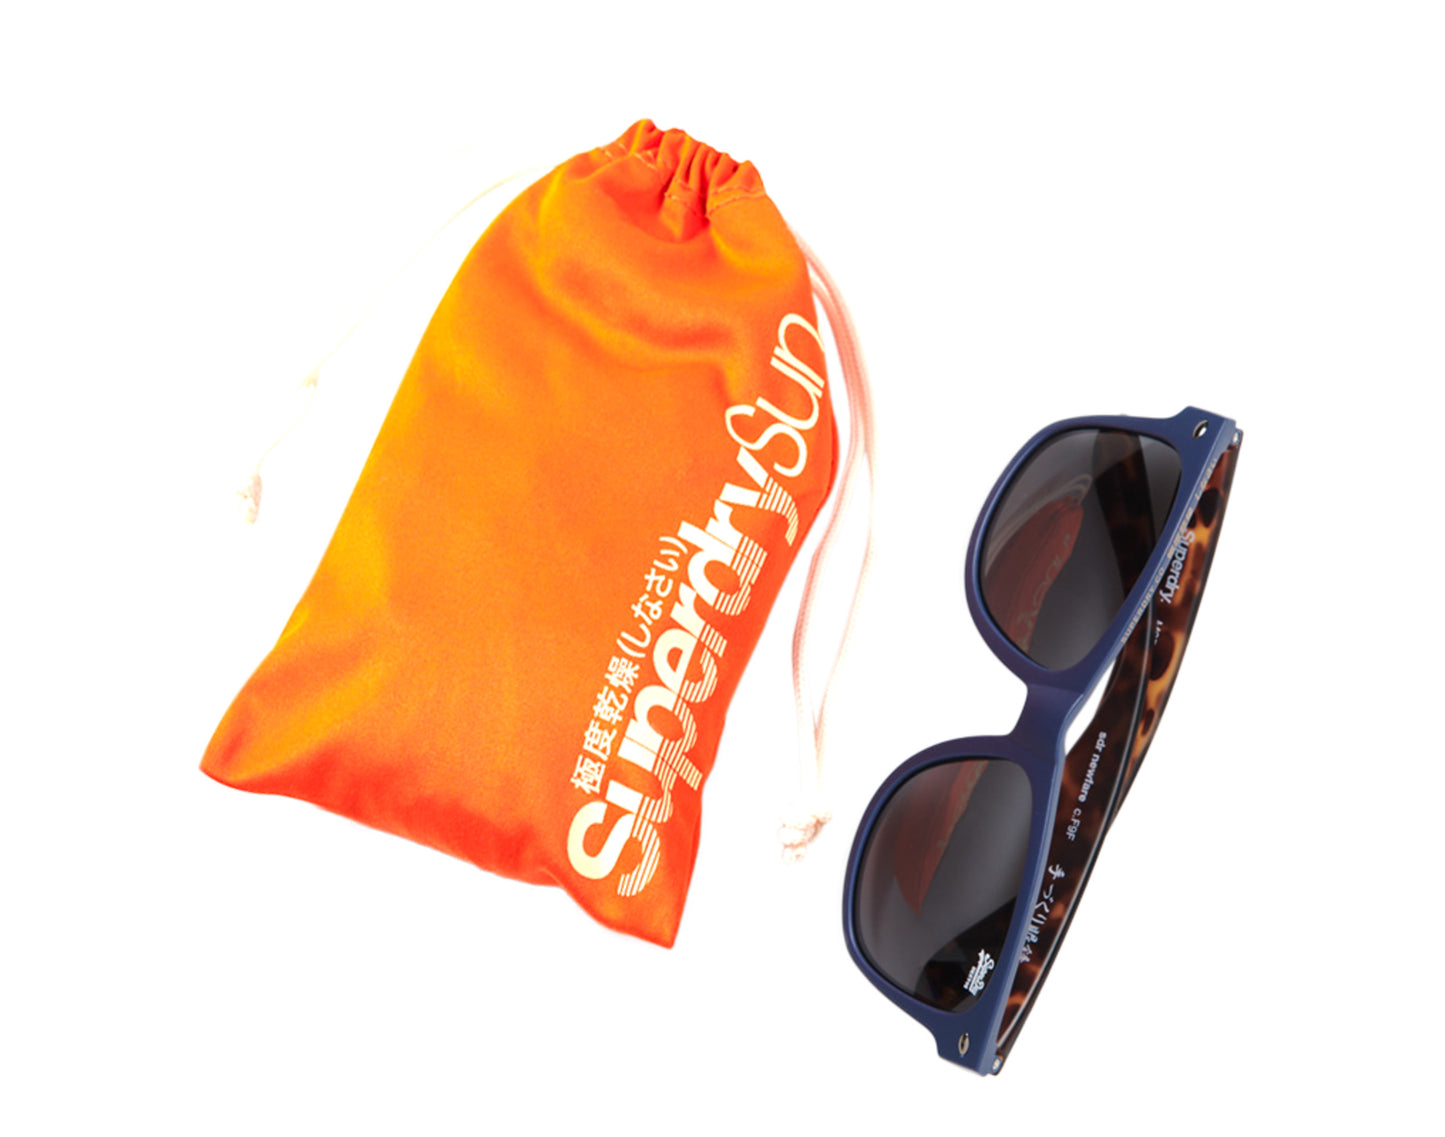 Superdry SDR Newfare Sunglasses